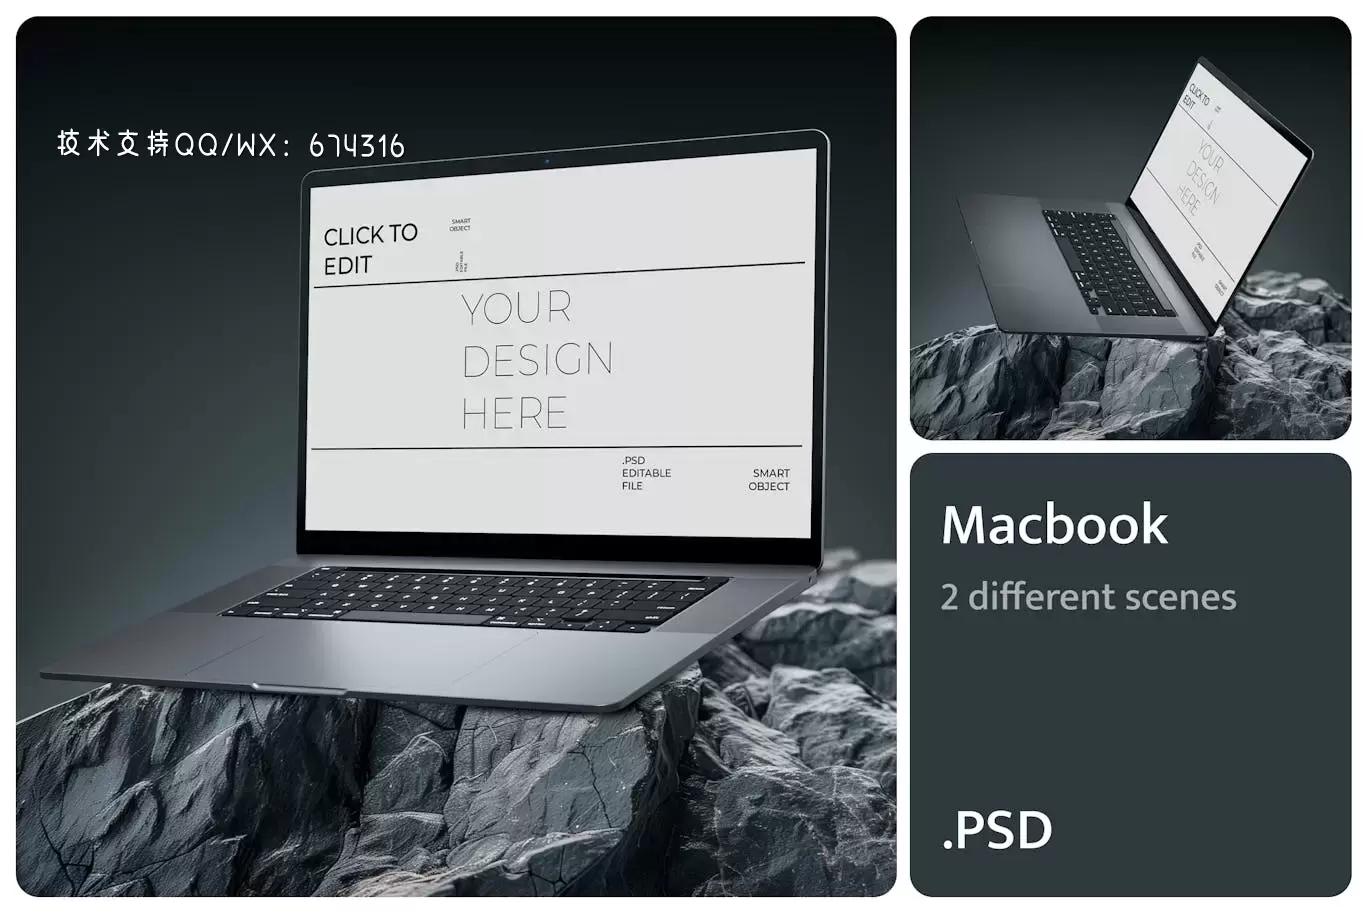 Macbook 电脑样机 (PSD)免费下载